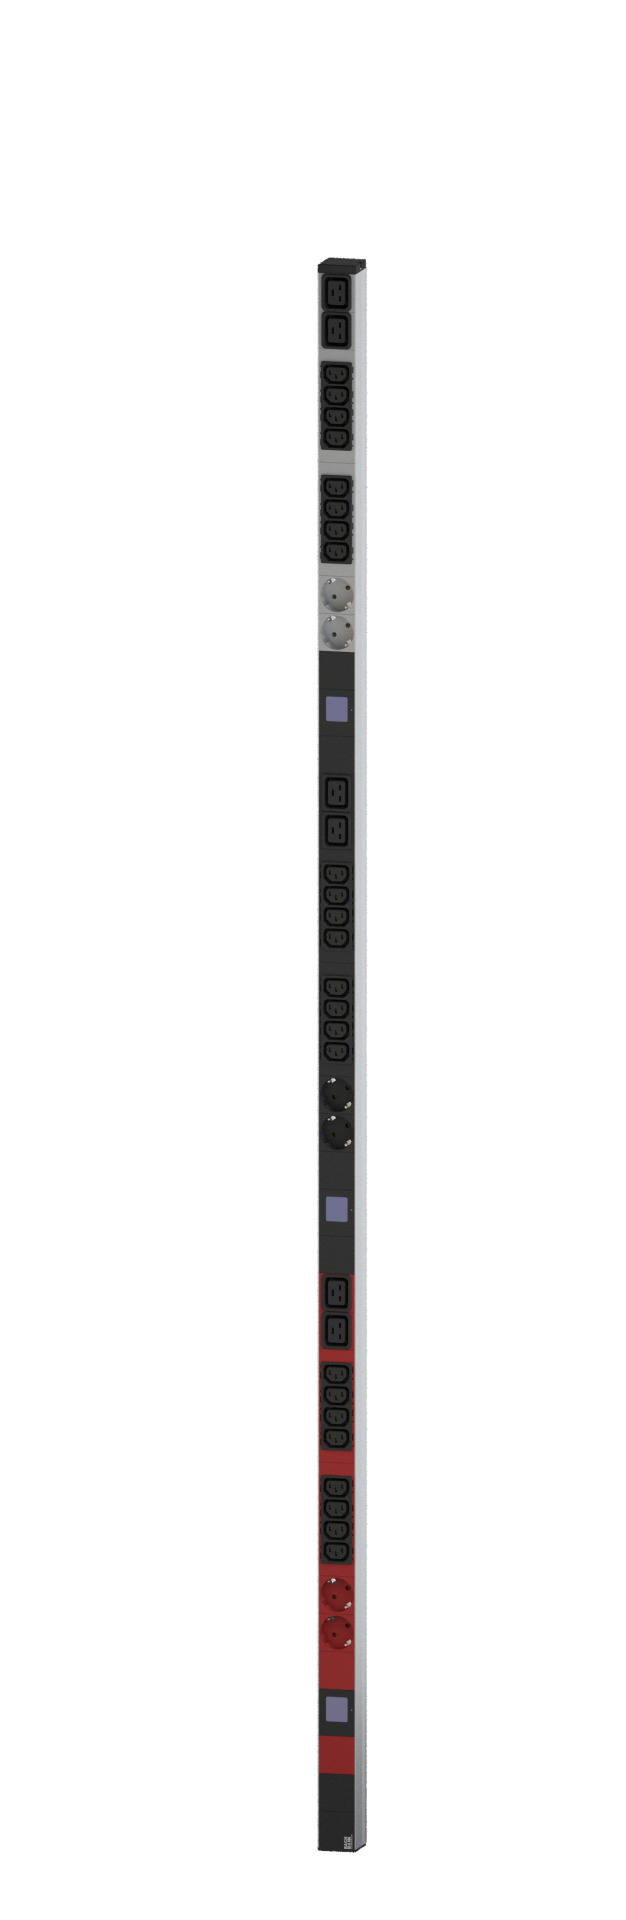 PDU Vertikal BN500 24xC13 6xCEE7/3 400V 16A mit Leistungsmessung (Display)